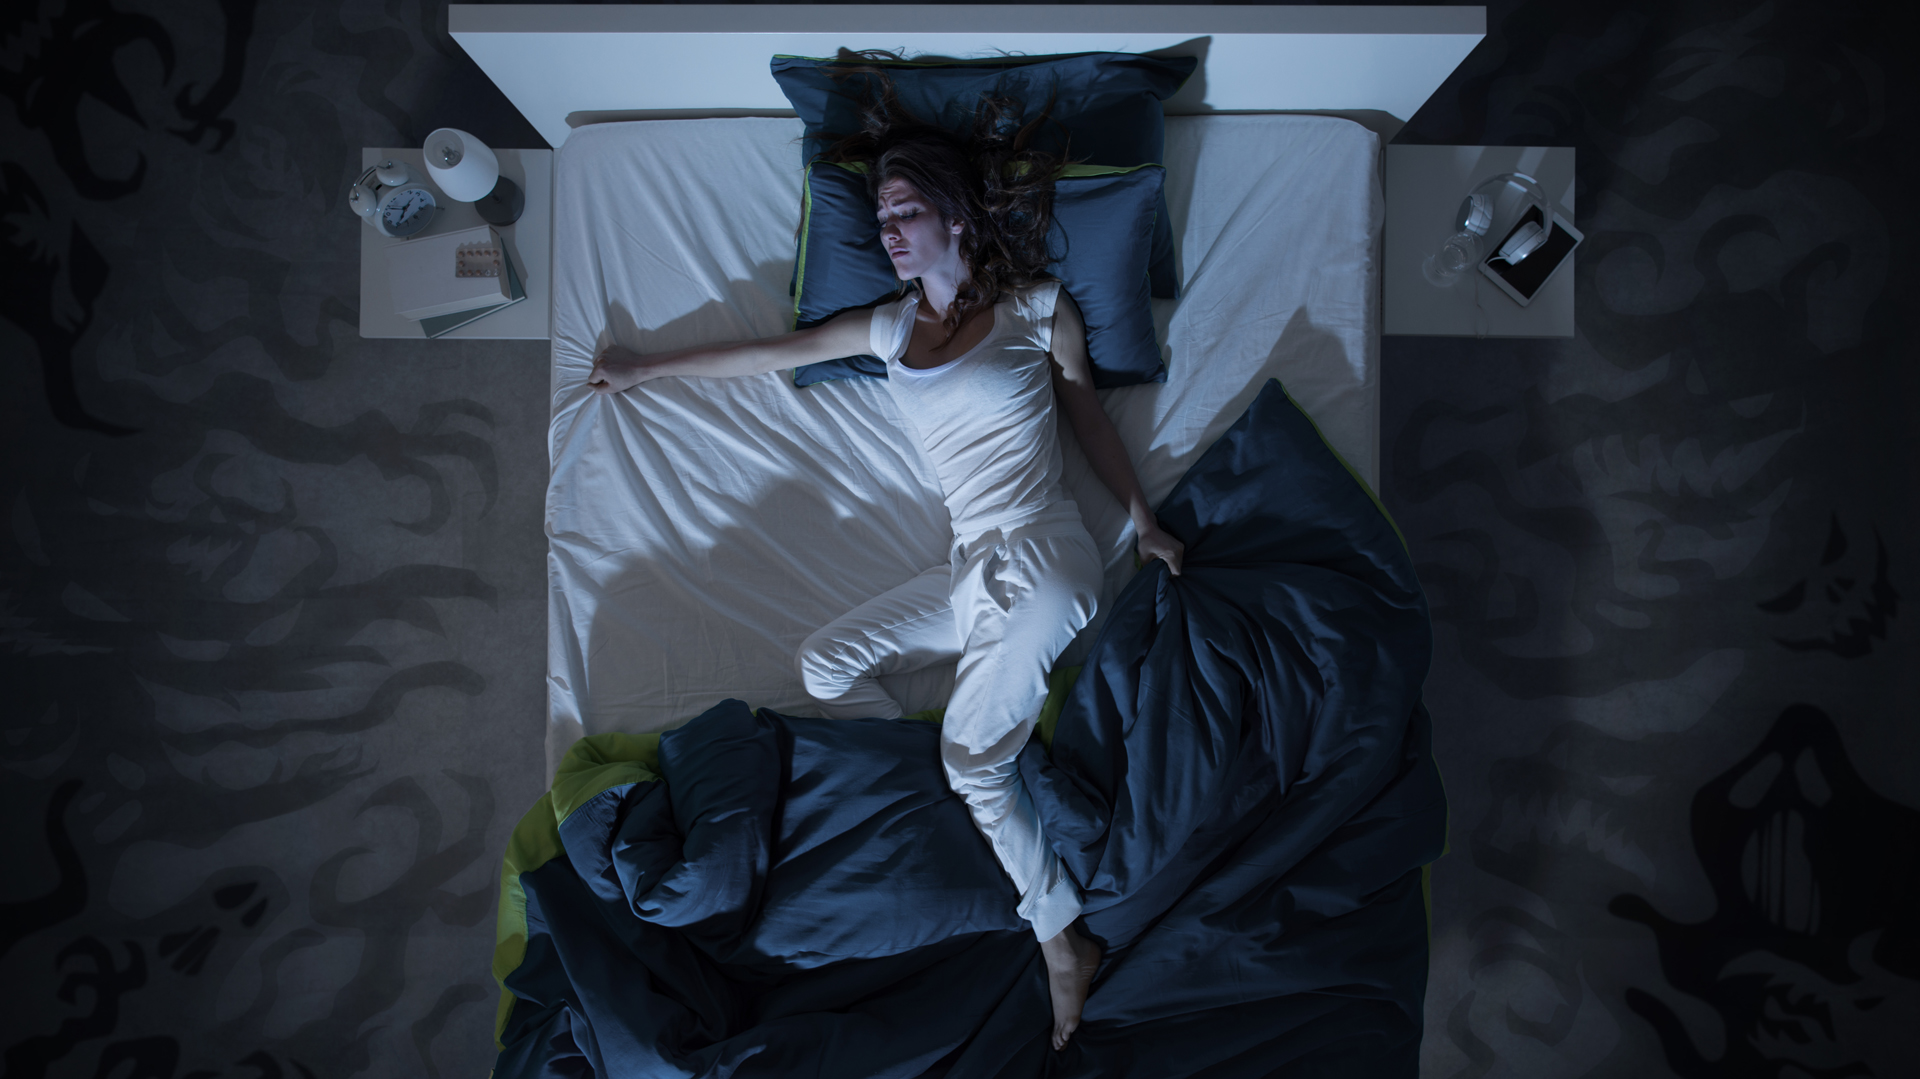 El reloj zumba en la muñeca, sacando a la persona del sueño sin necesariamente despertarla (iStock)